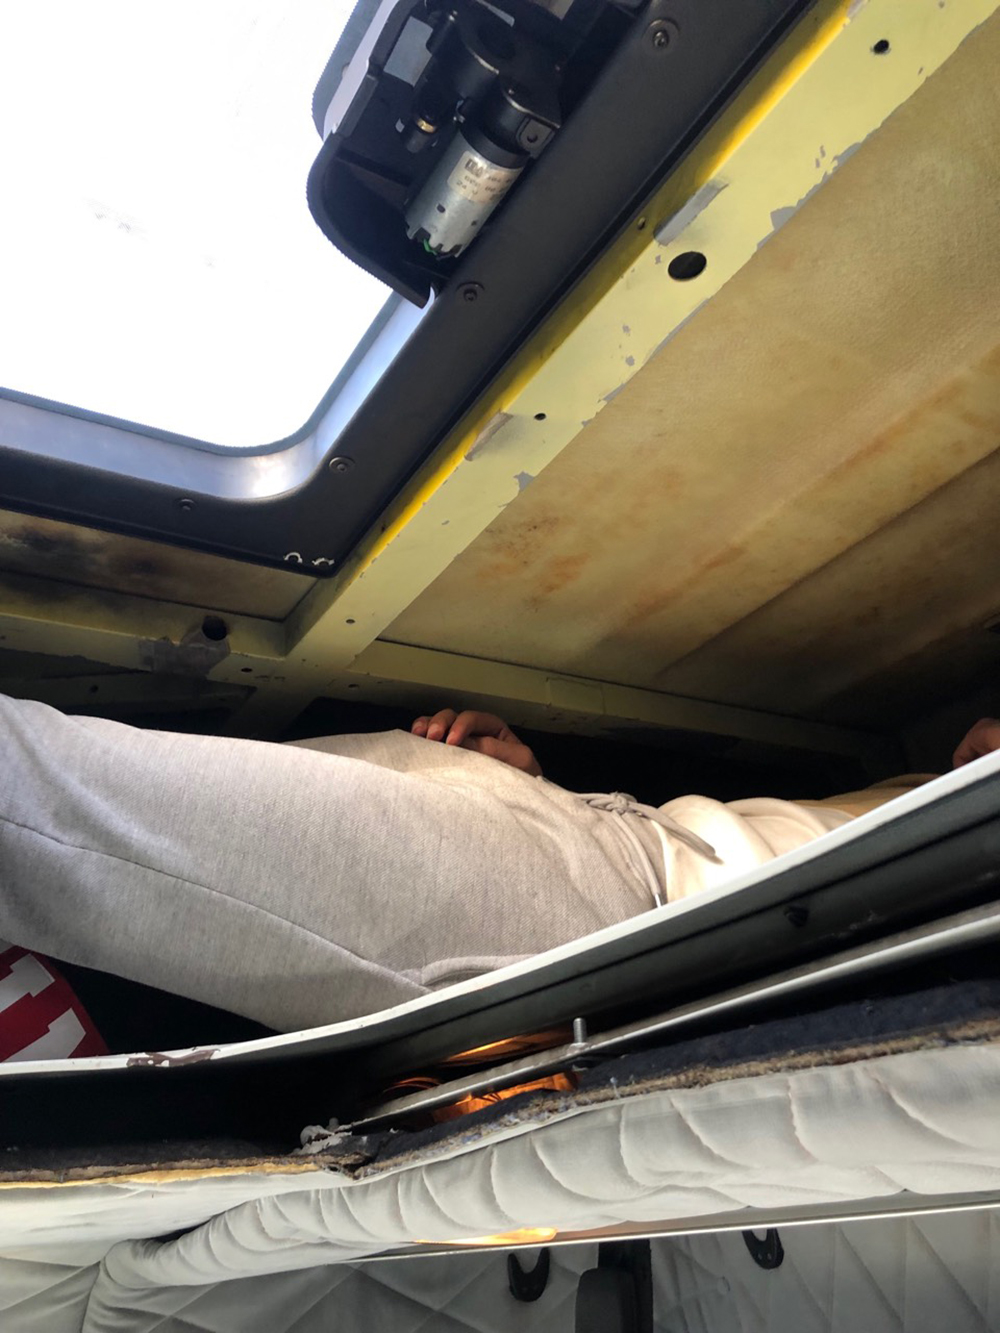 Λιμάνι Πάτρας: Έκρυβε έξι ανθρώπους στην οροφή της νταλίκας! (pics) - Φωτογραφία 2